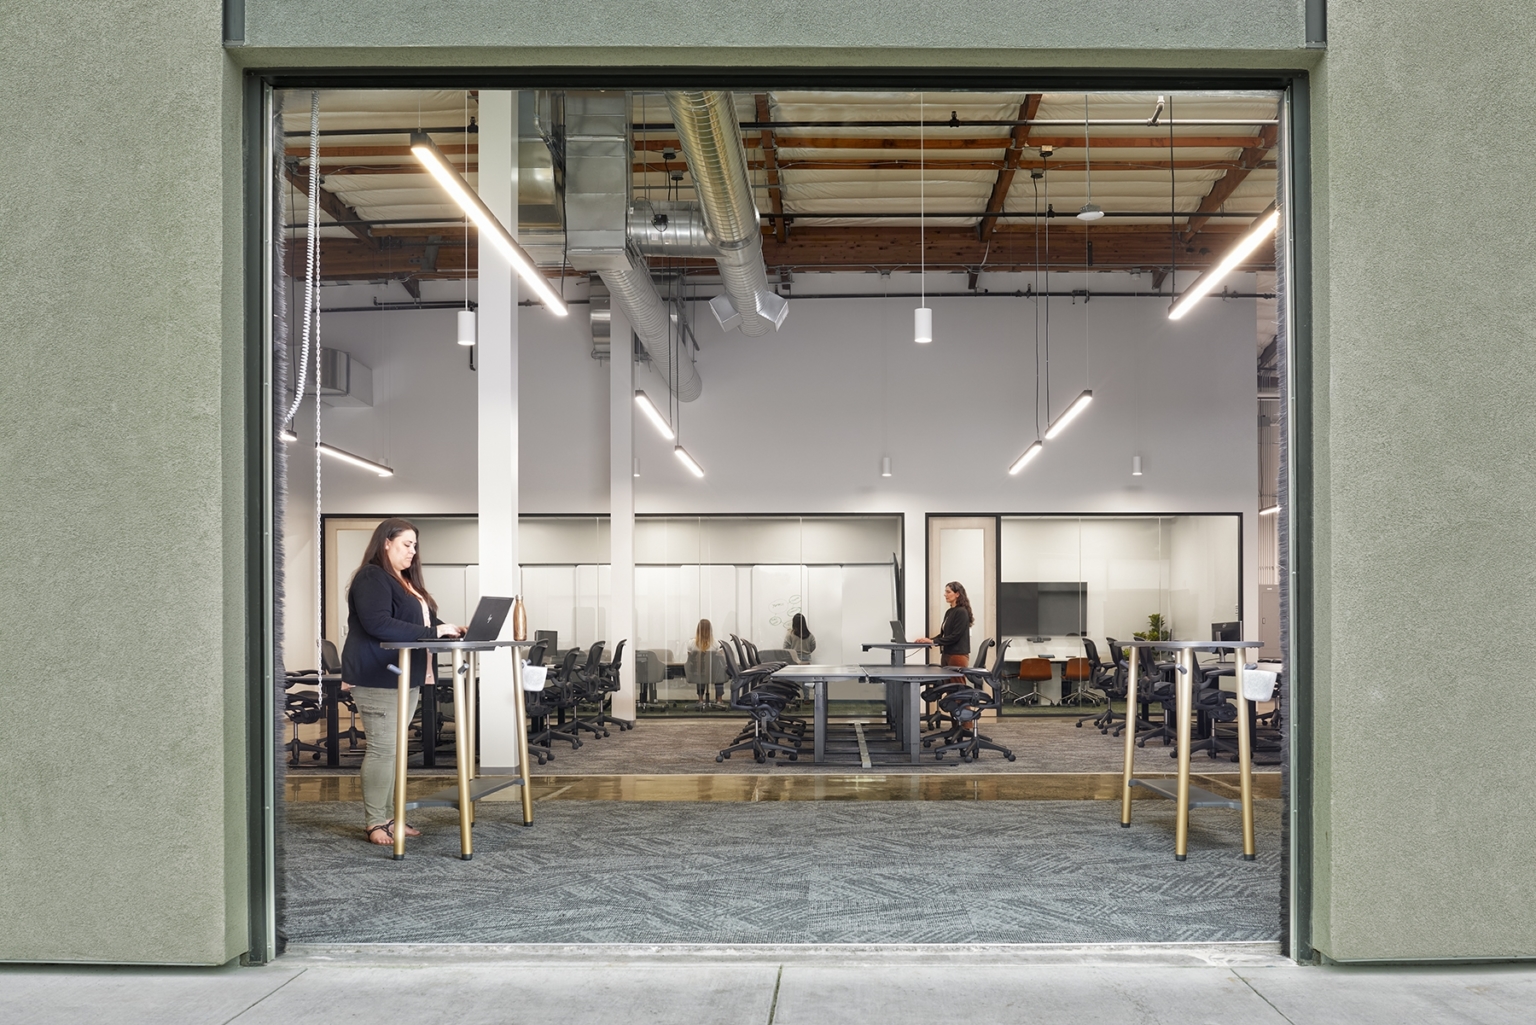 【Yummlyのオフィスデザイン】- カリフォルニア州, サンカルロスのワークスペース